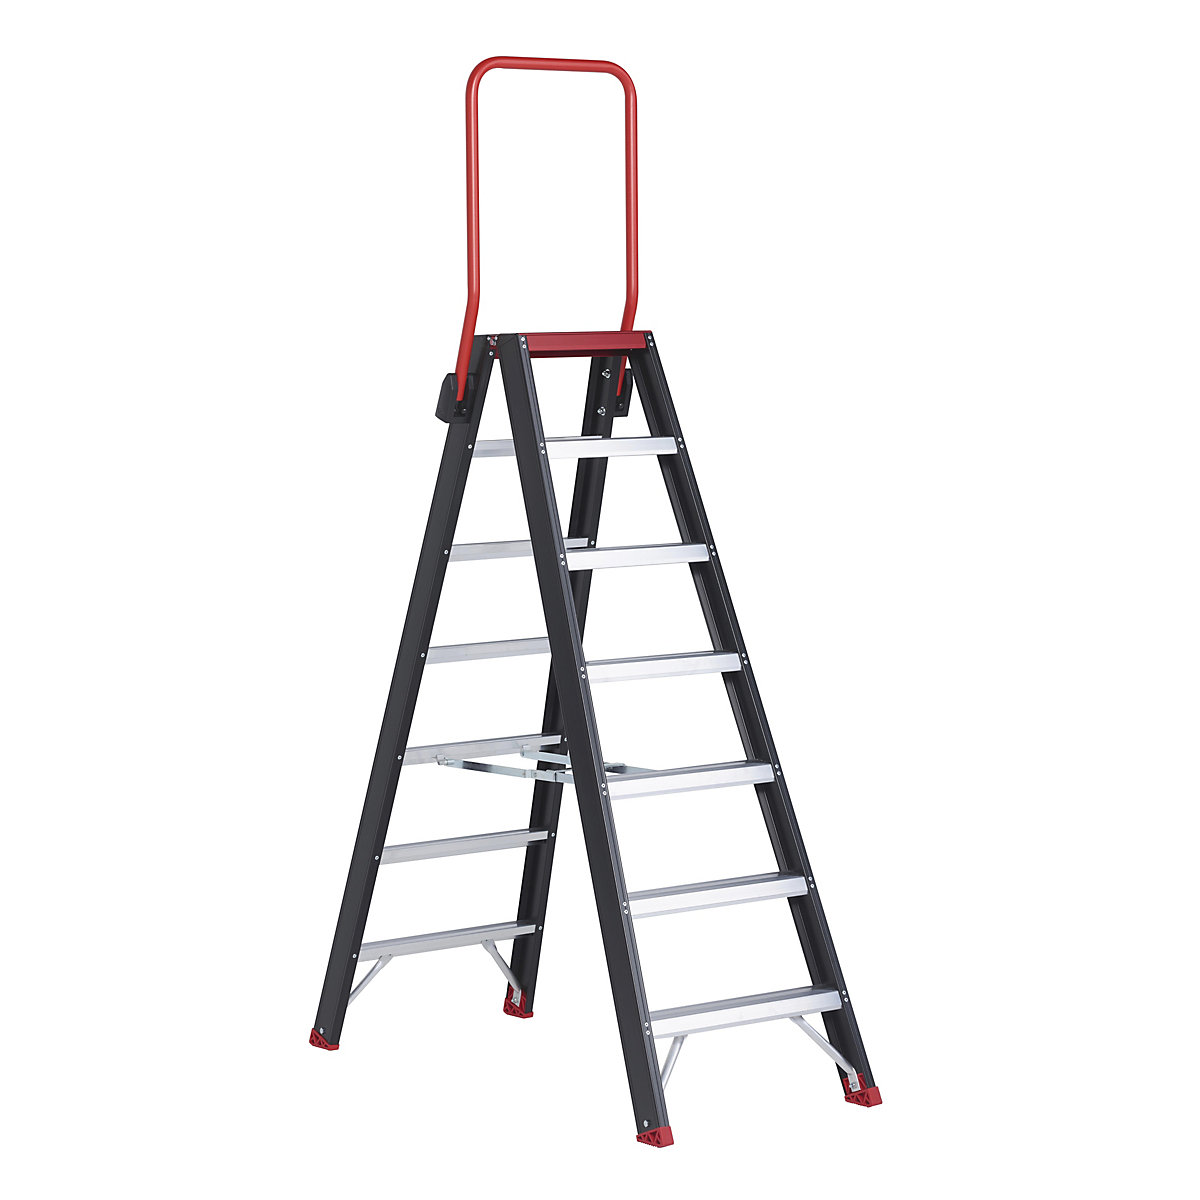 Escalera tipo tijera de seguridad – Altrex, ascenso por ambos lados, 2 x 7 peldaños-8